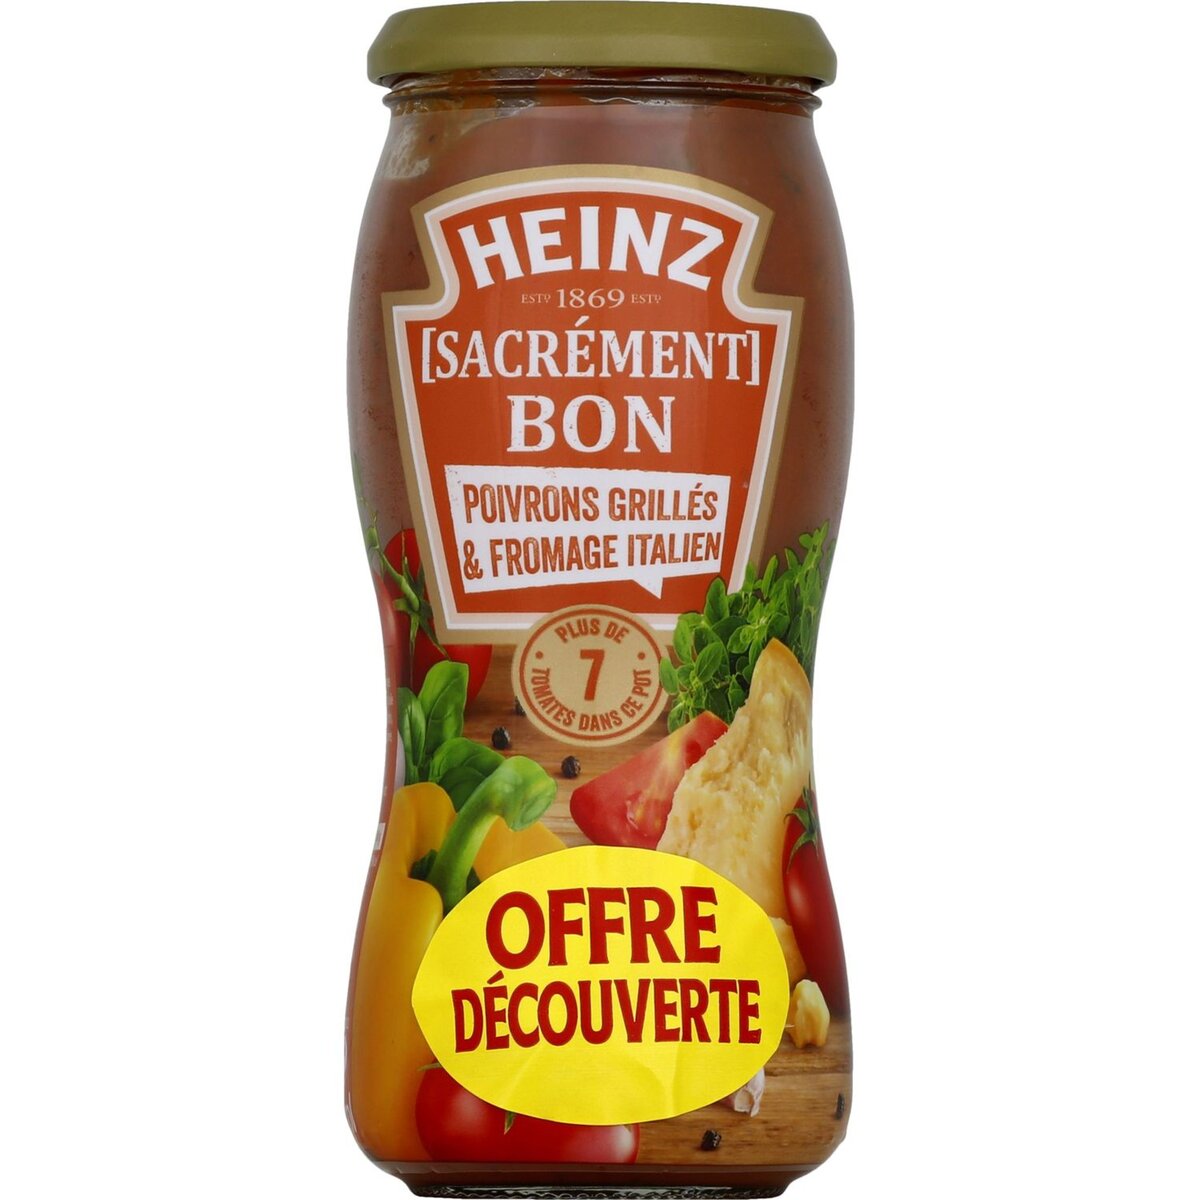 HEINZ Heinz sacrément bon sauce aux poivrons grillés 490g